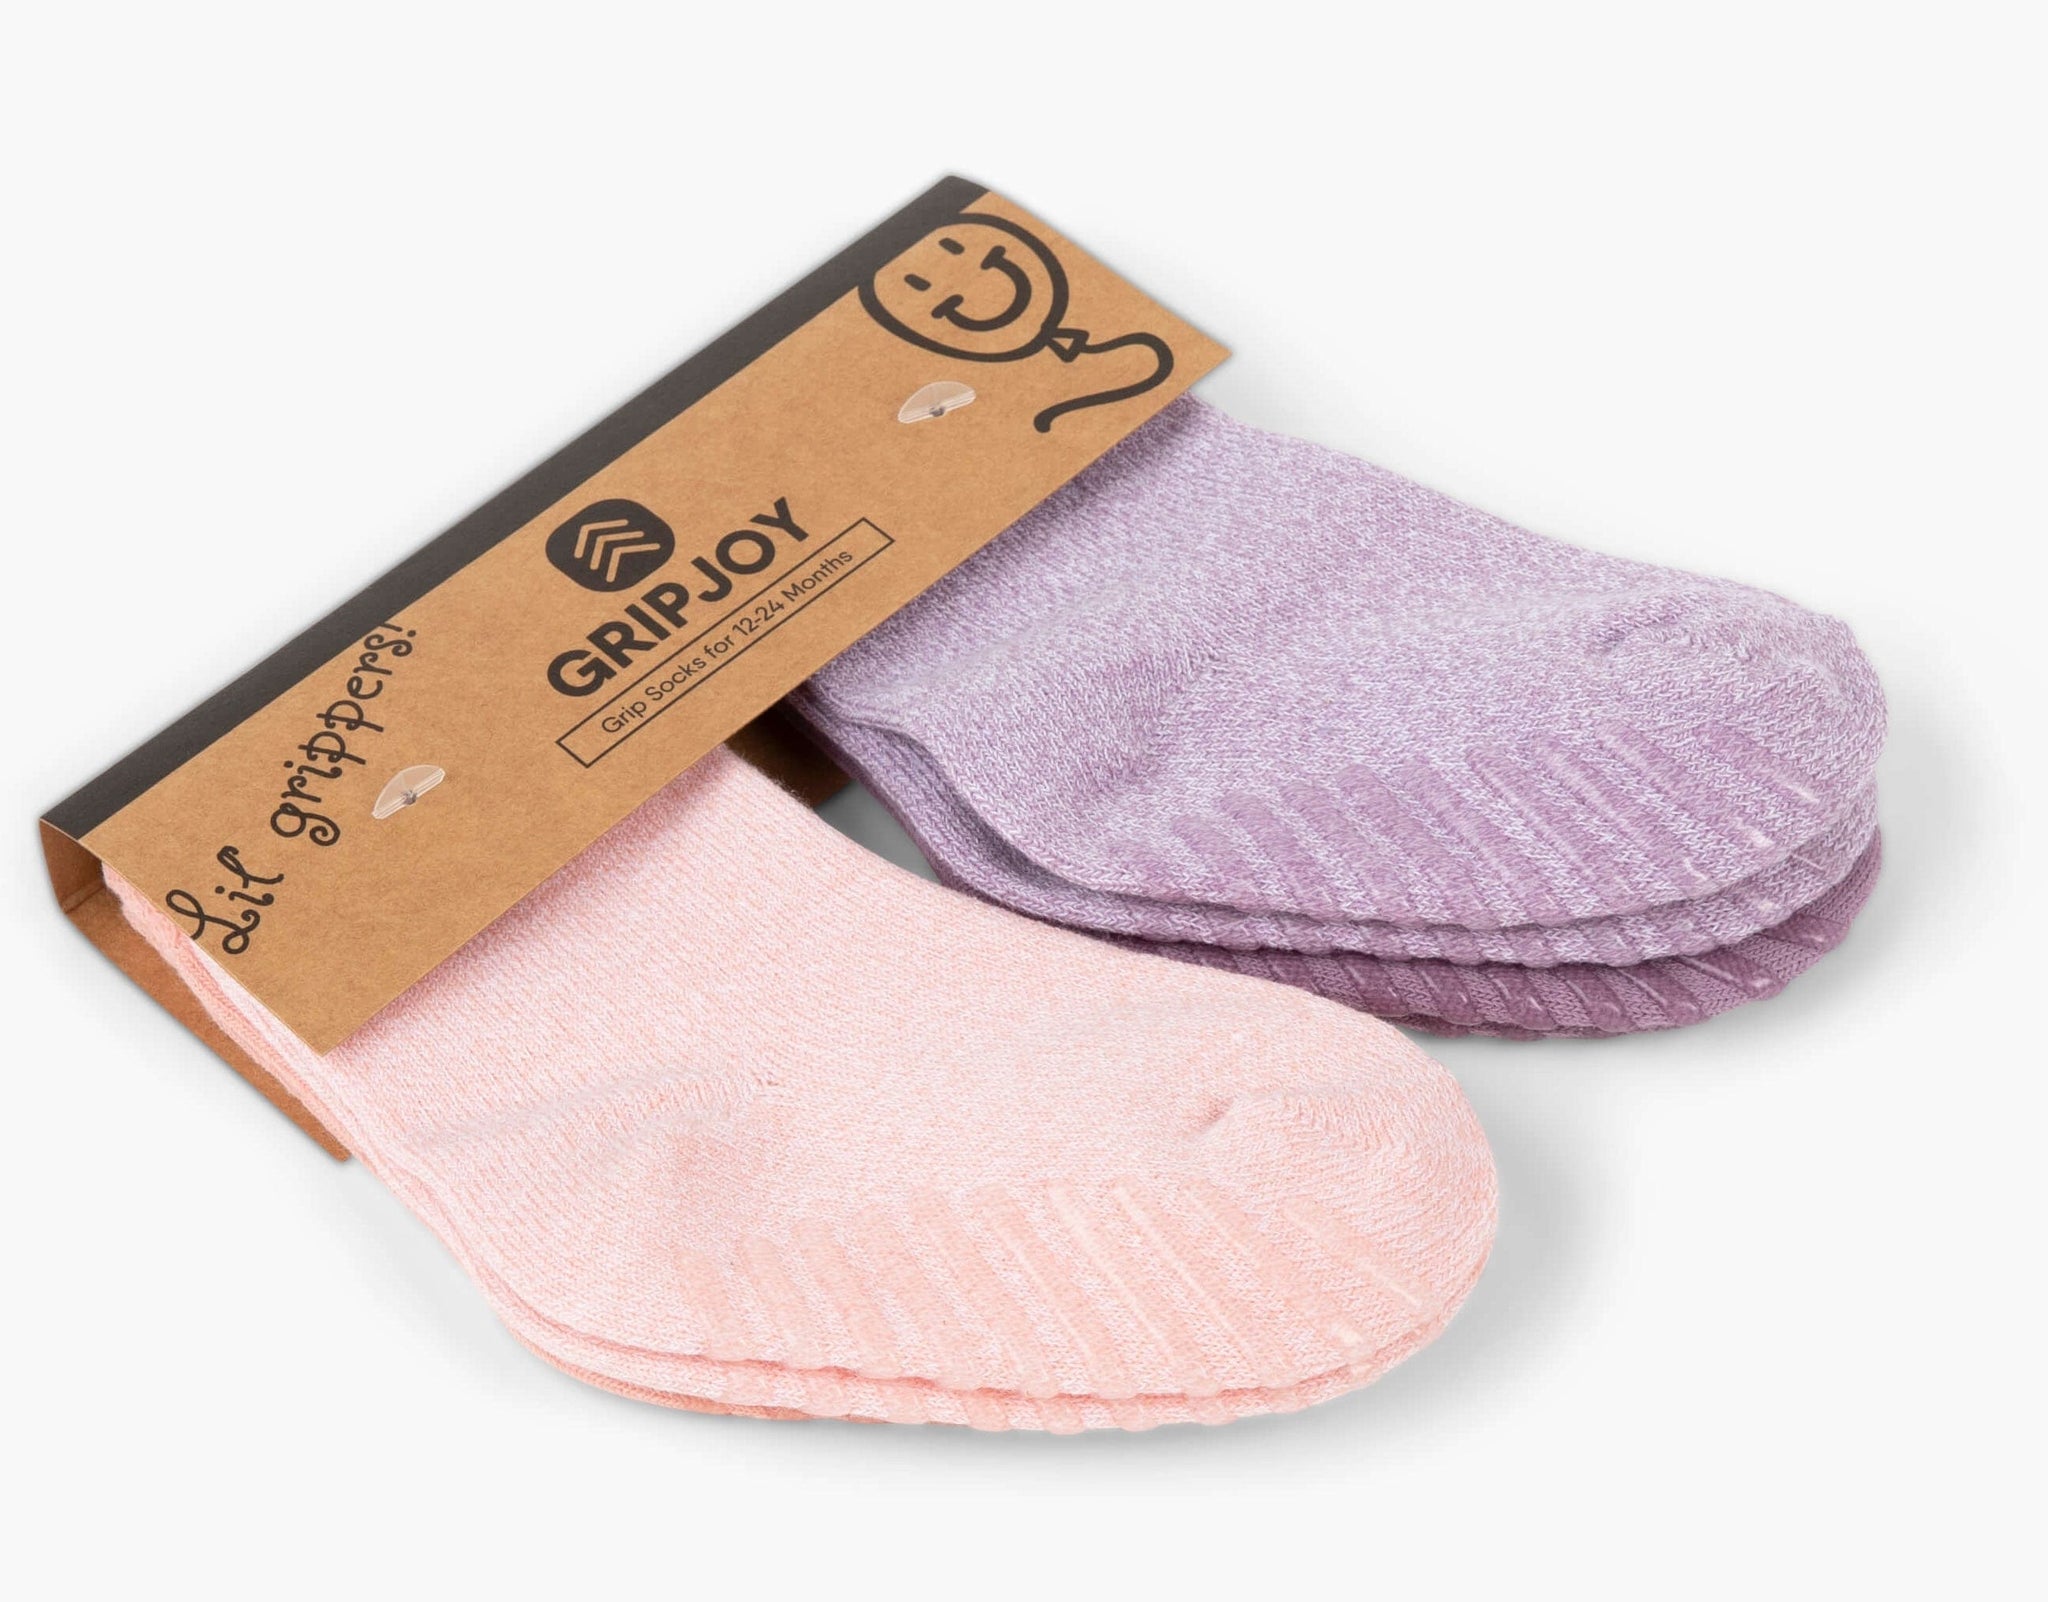 Gripjoy Socks Toddlers & Kids Pink & Purple Grip Socks - 4 pairs